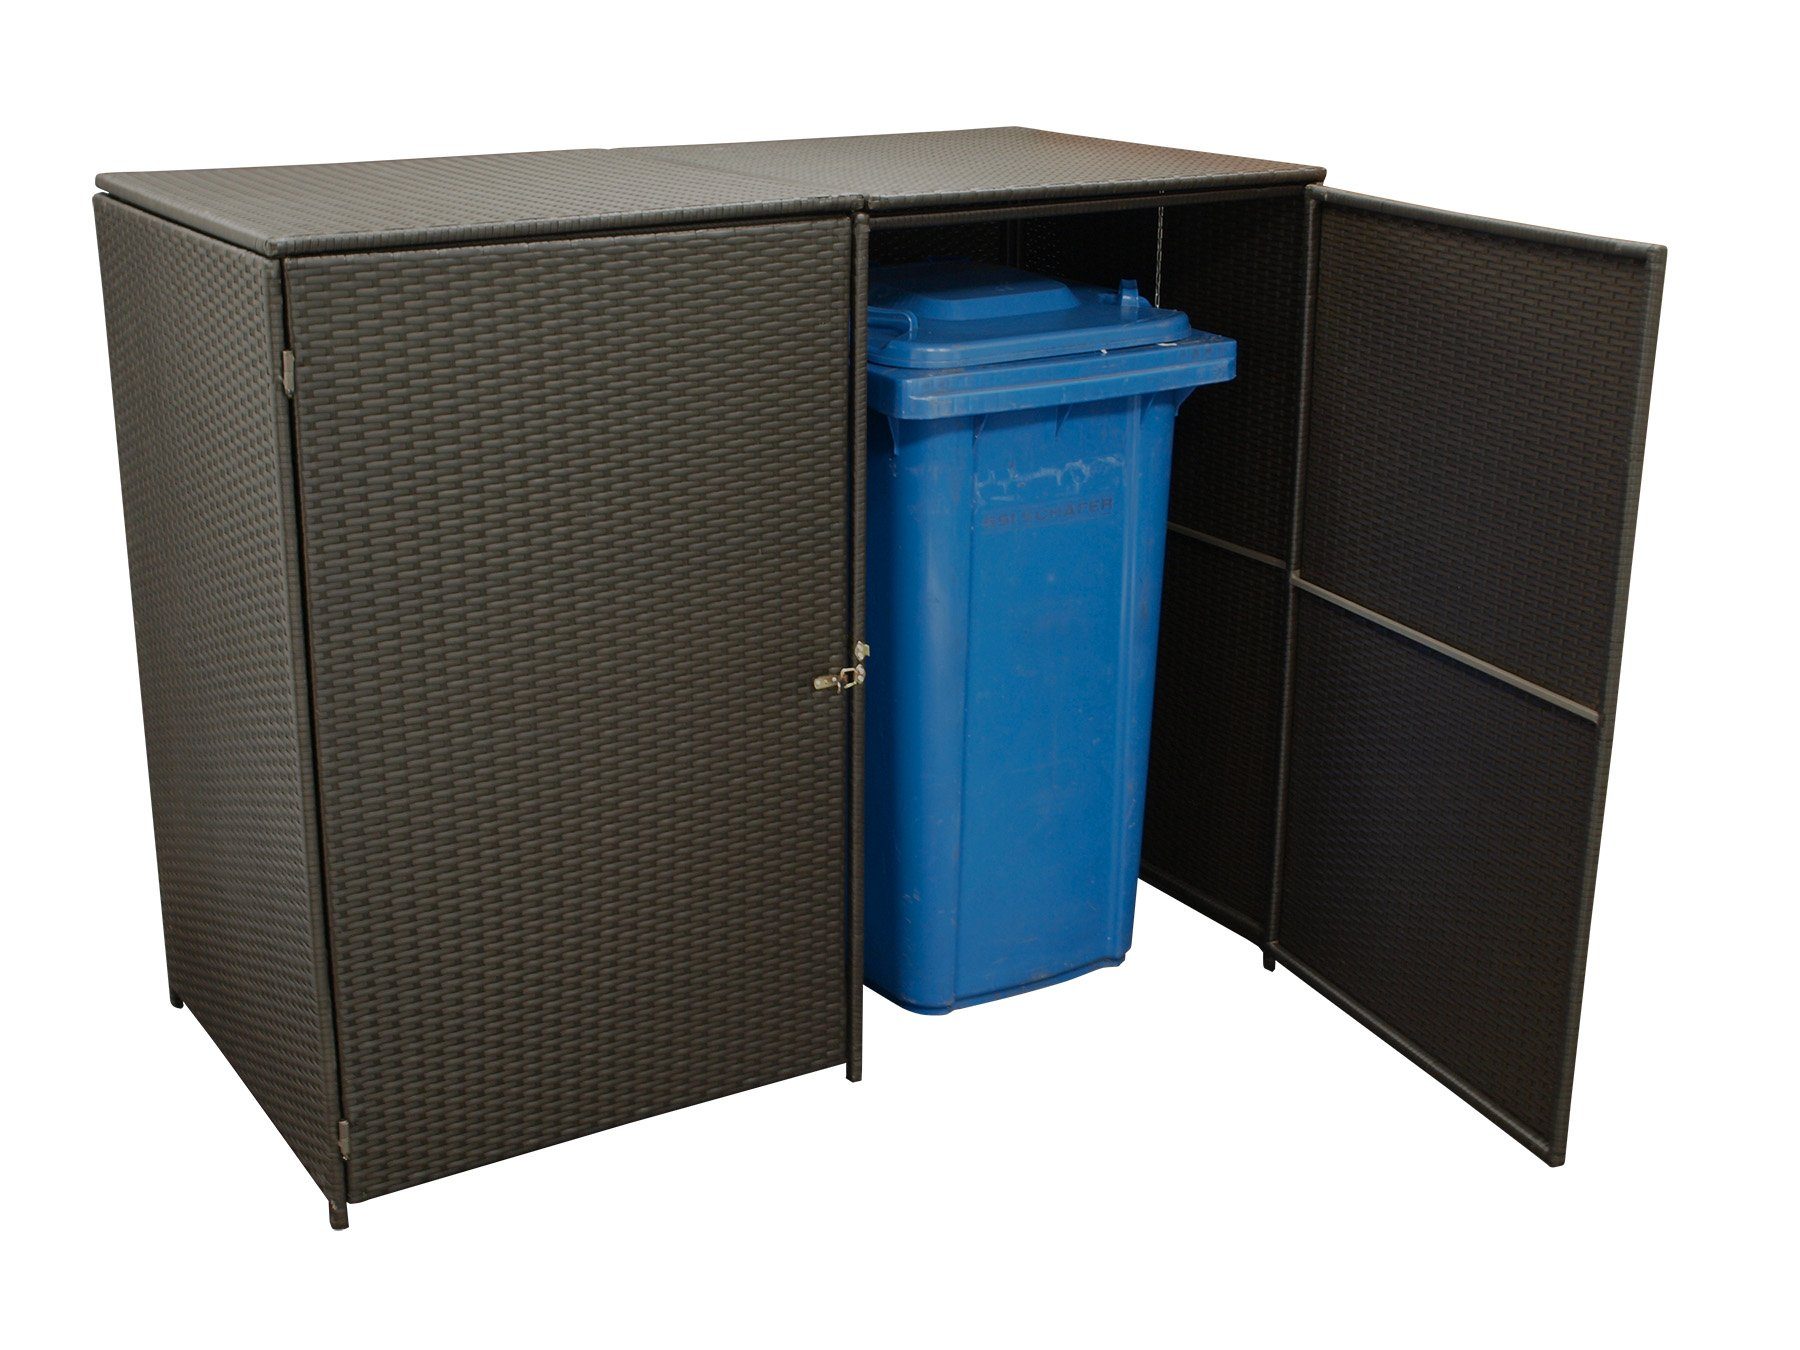 MERXX Mülltonnenbox (1 St), Dekorative Doppel - Mülltonnenbox, Stahlgestell + wetterfestes Polyrattan moccafarben, Maße: 78x150x123cm